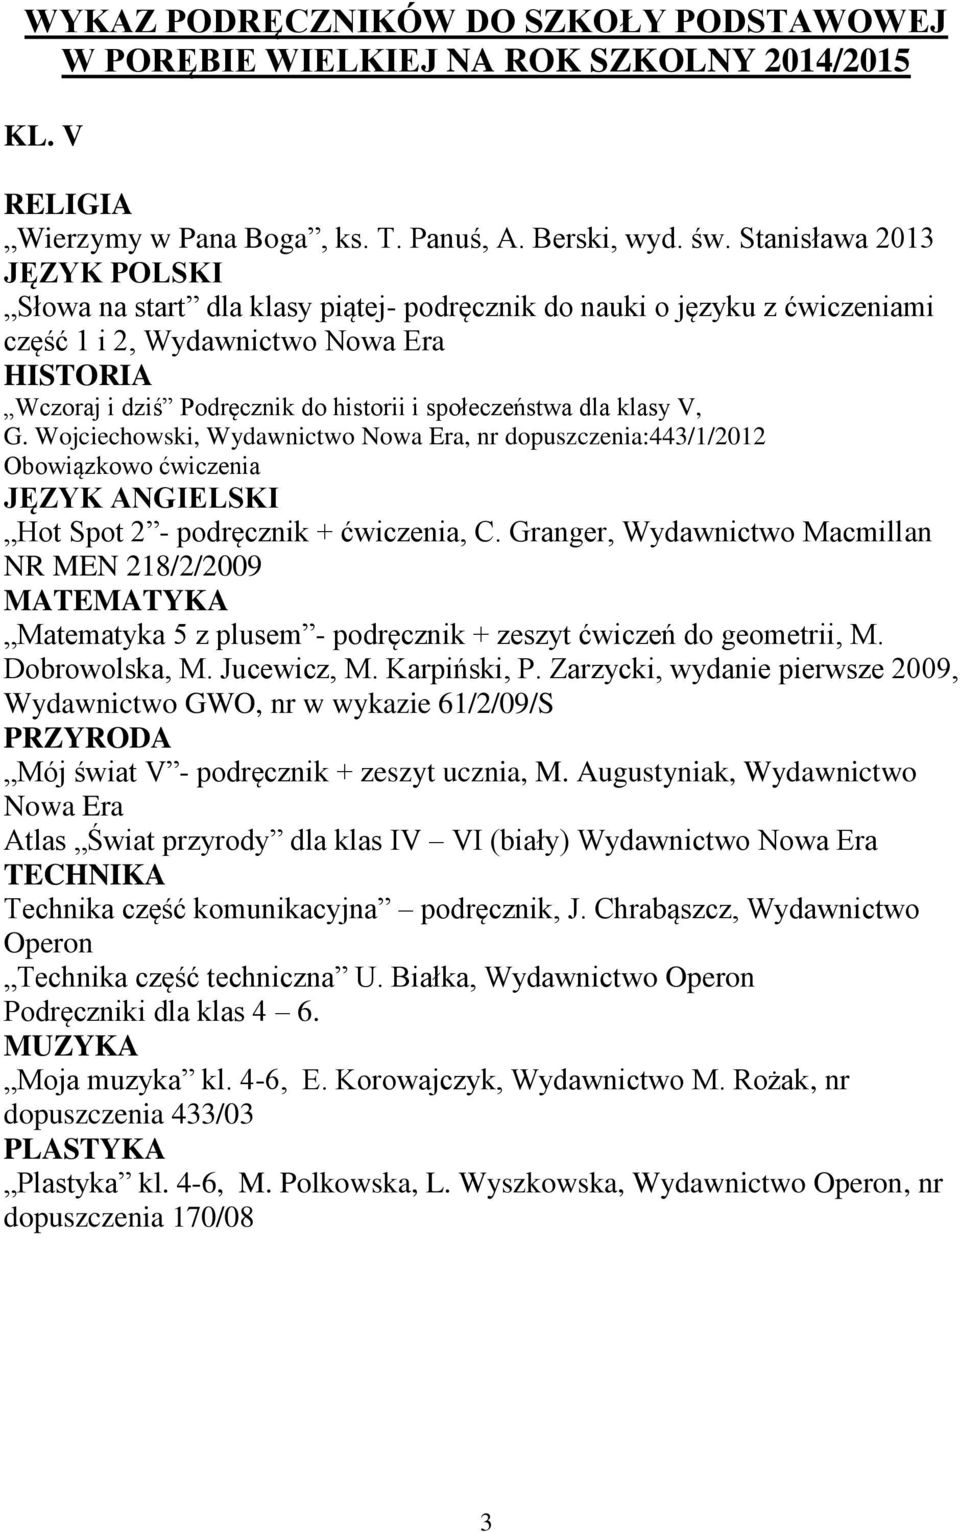 Wojciechowski, Wydawnictwo Nowa Era, nr dopuszczenia:443/1/2012 Obowiązkowo ćwiczenia Hot Spot 2 - podręcznik + ćwiczenia, C.